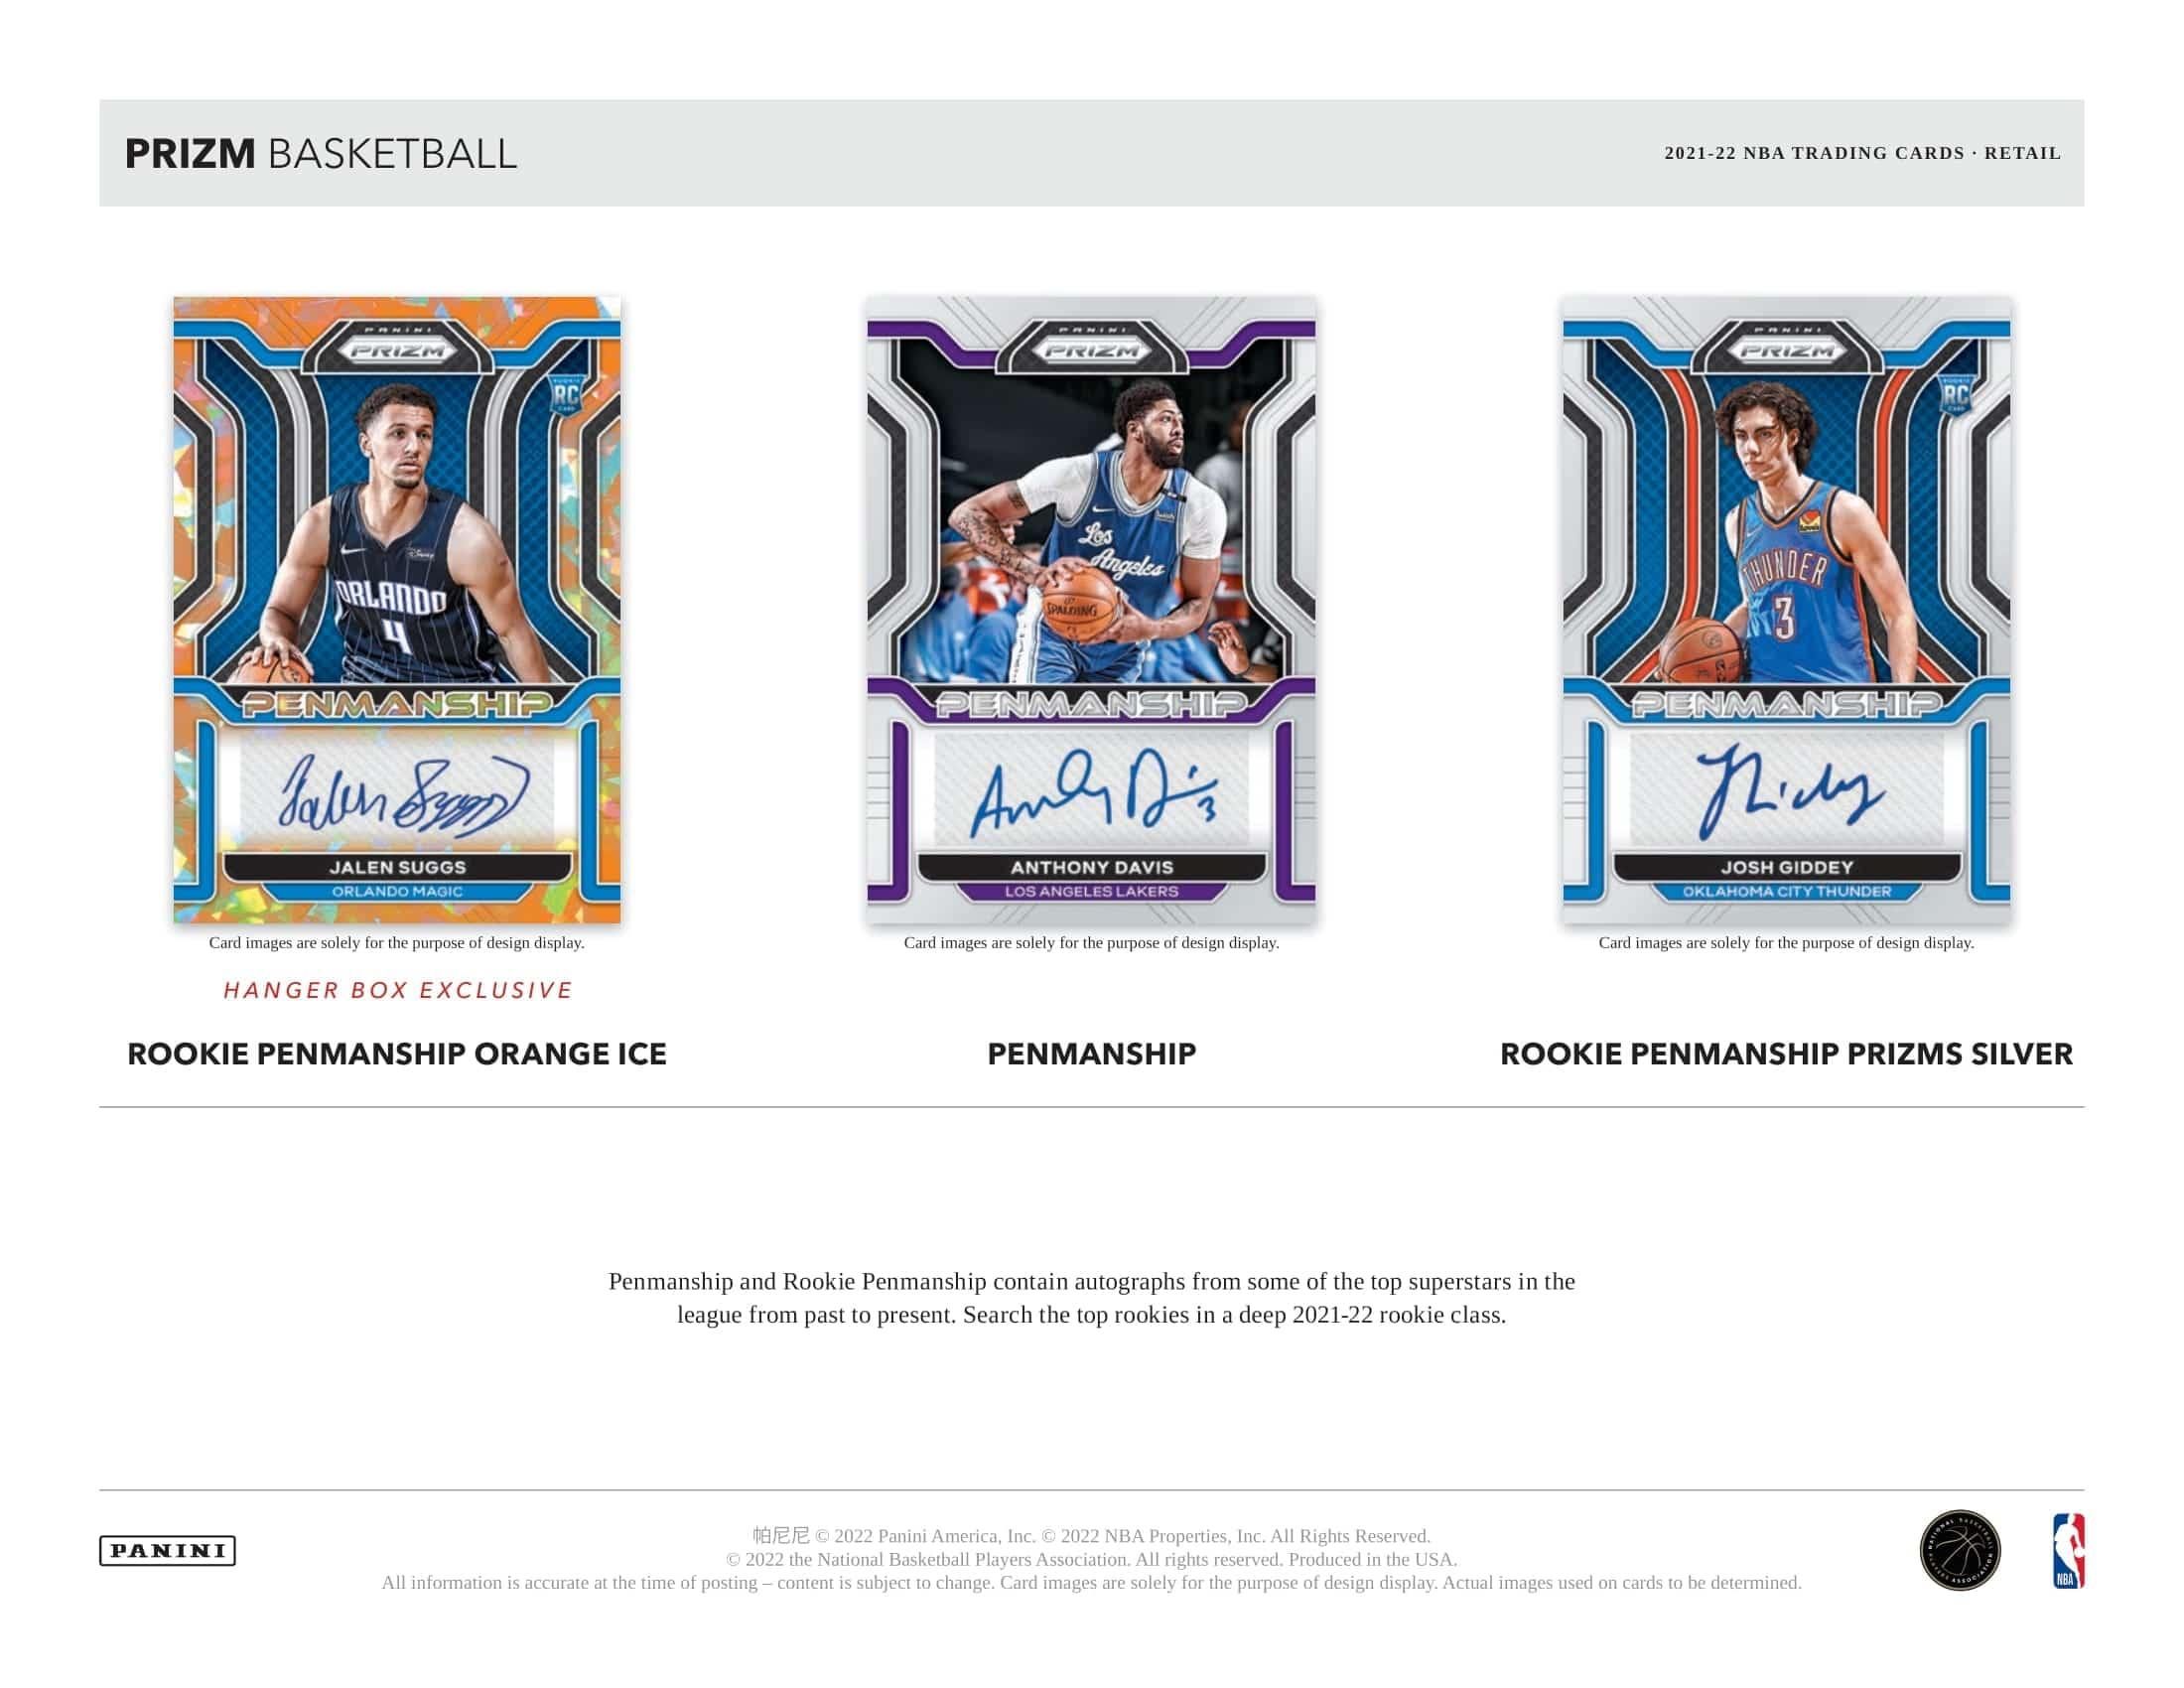 Panini - 2021/22 Prizm Basketball (NBA) - Retail Box - The Card Vault